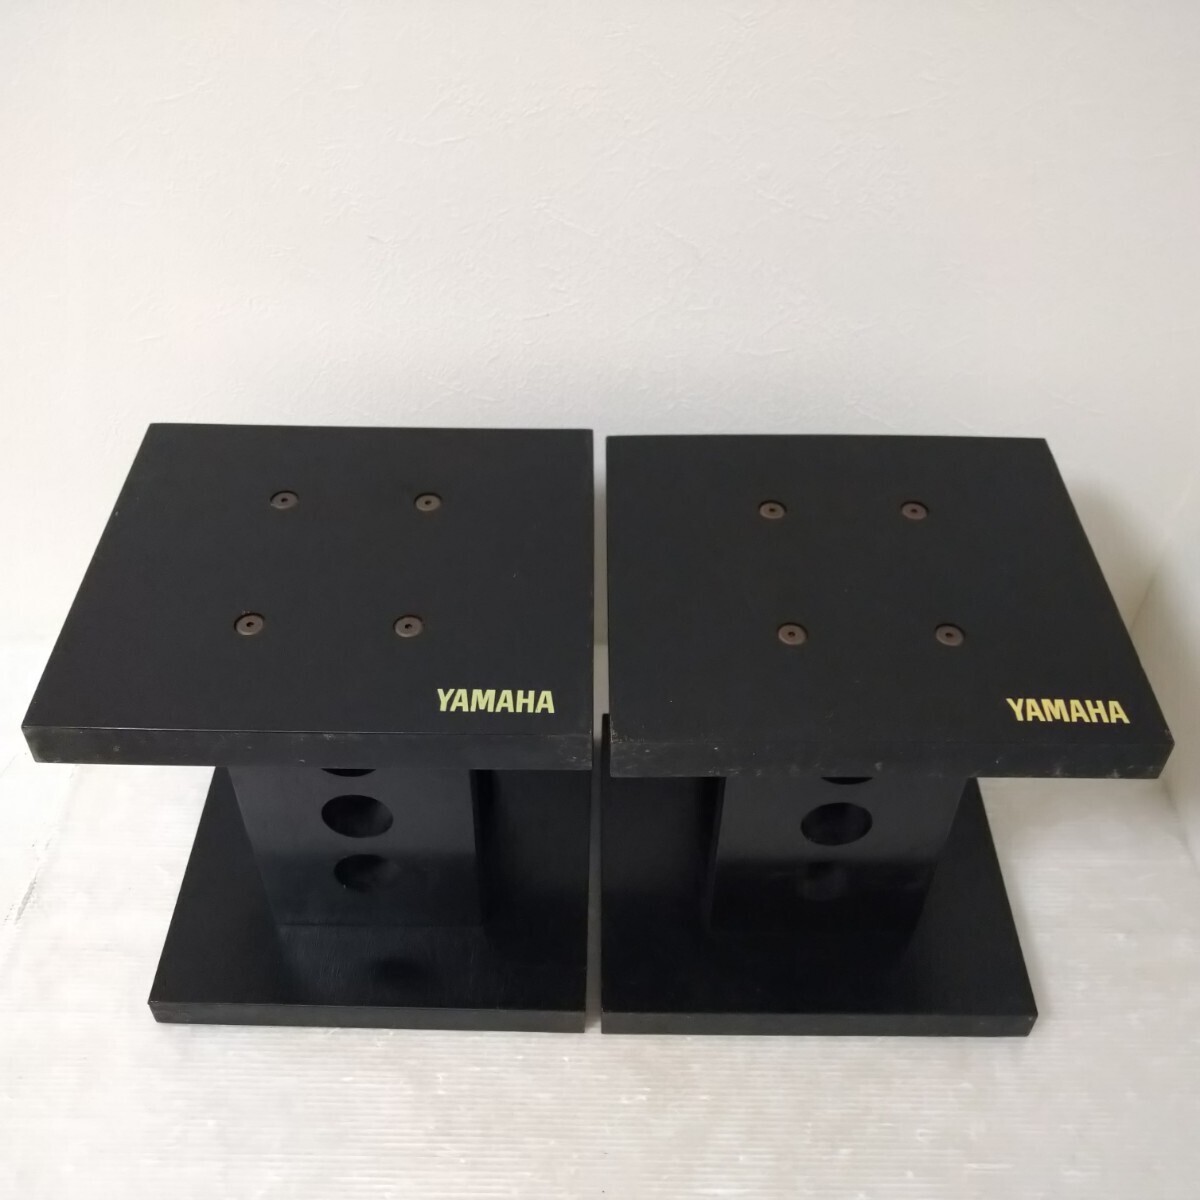 YAMAHA Yamaha оригинальный динамик подставка черный 